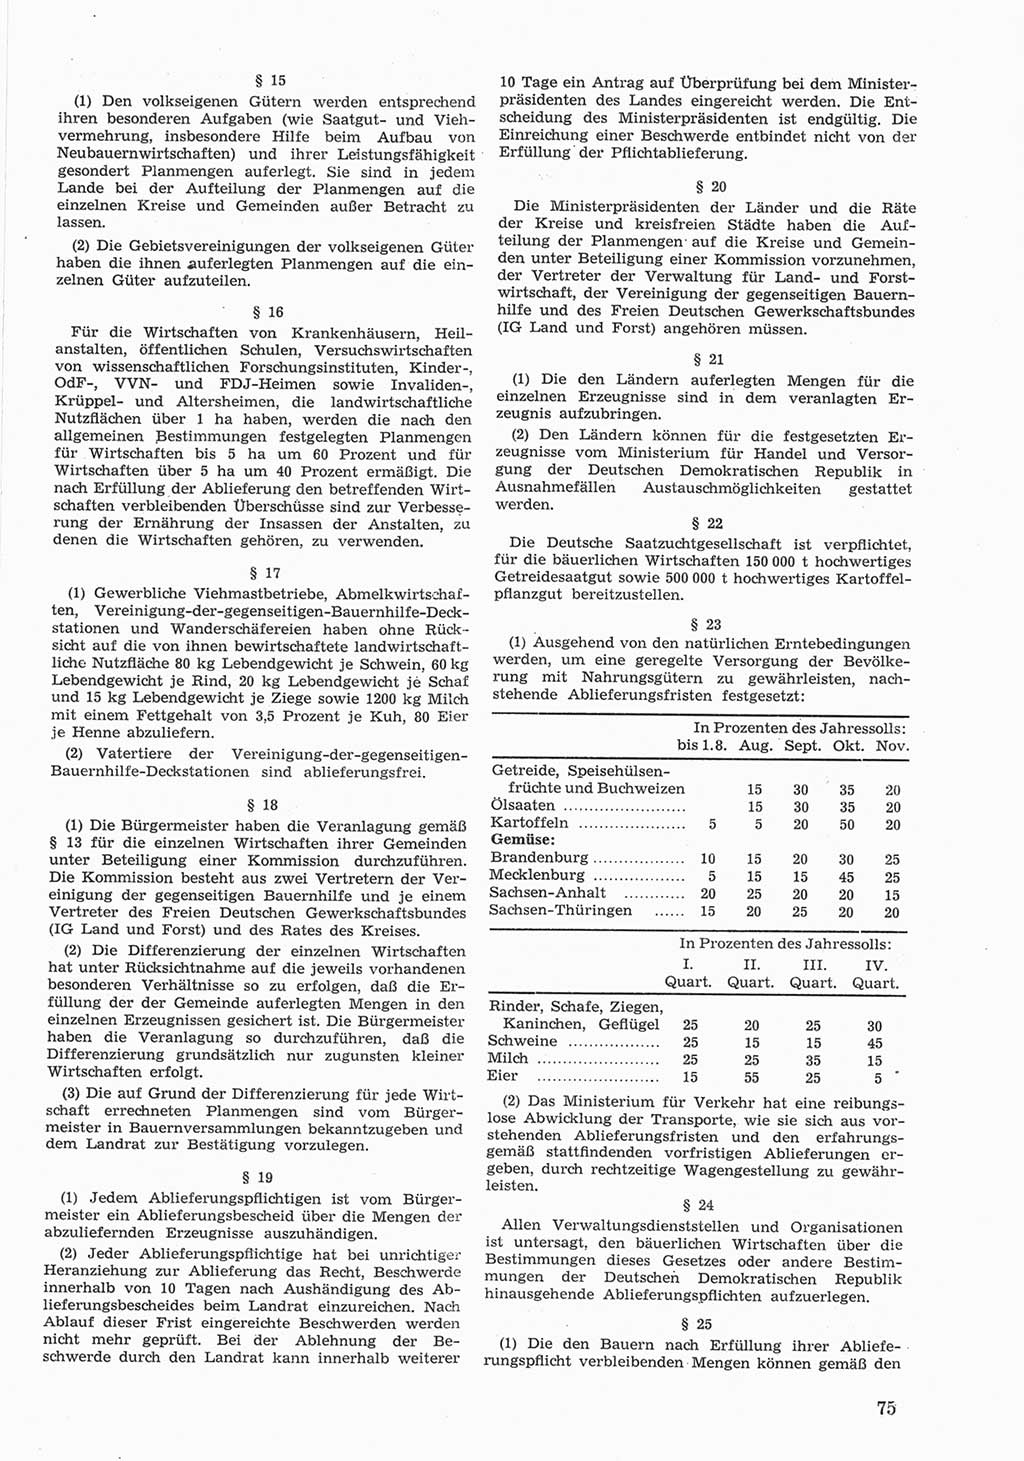 Provisorische Volkskammer (VK) der Deutschen Demokratischen Republik (DDR) 1949-1950, Dokument 675 (Prov. VK DDR 1949-1950, Dok. 675)